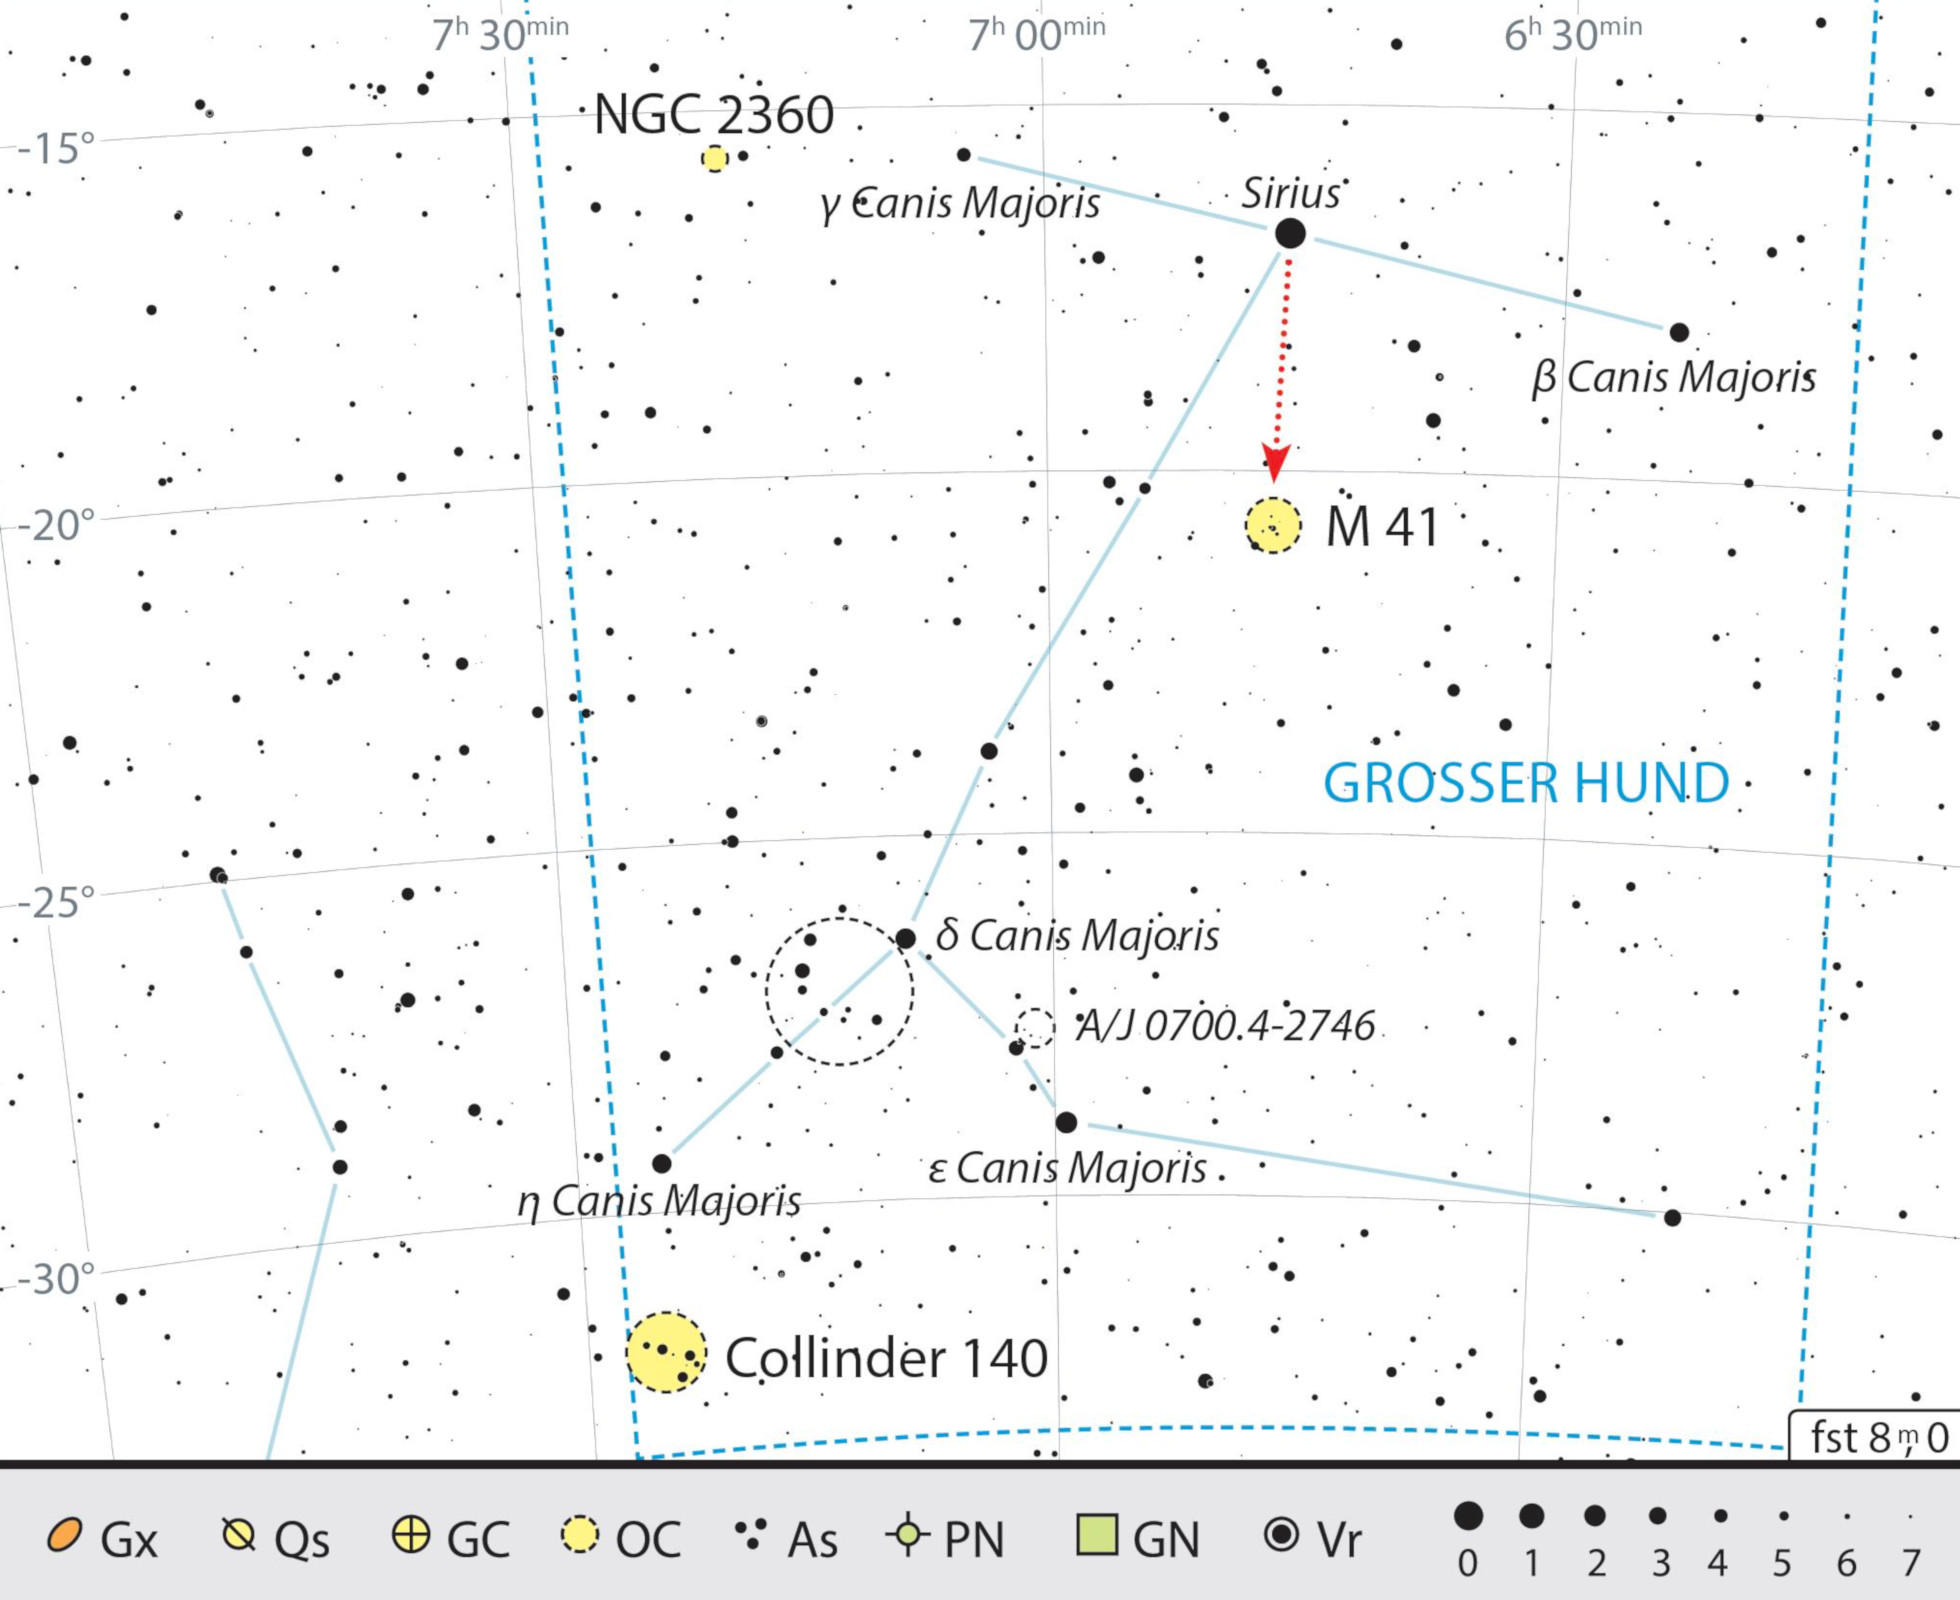 Lokaliseringskarta över objekt för kikare i stjärnbilden Stora hunden. J. Scholten